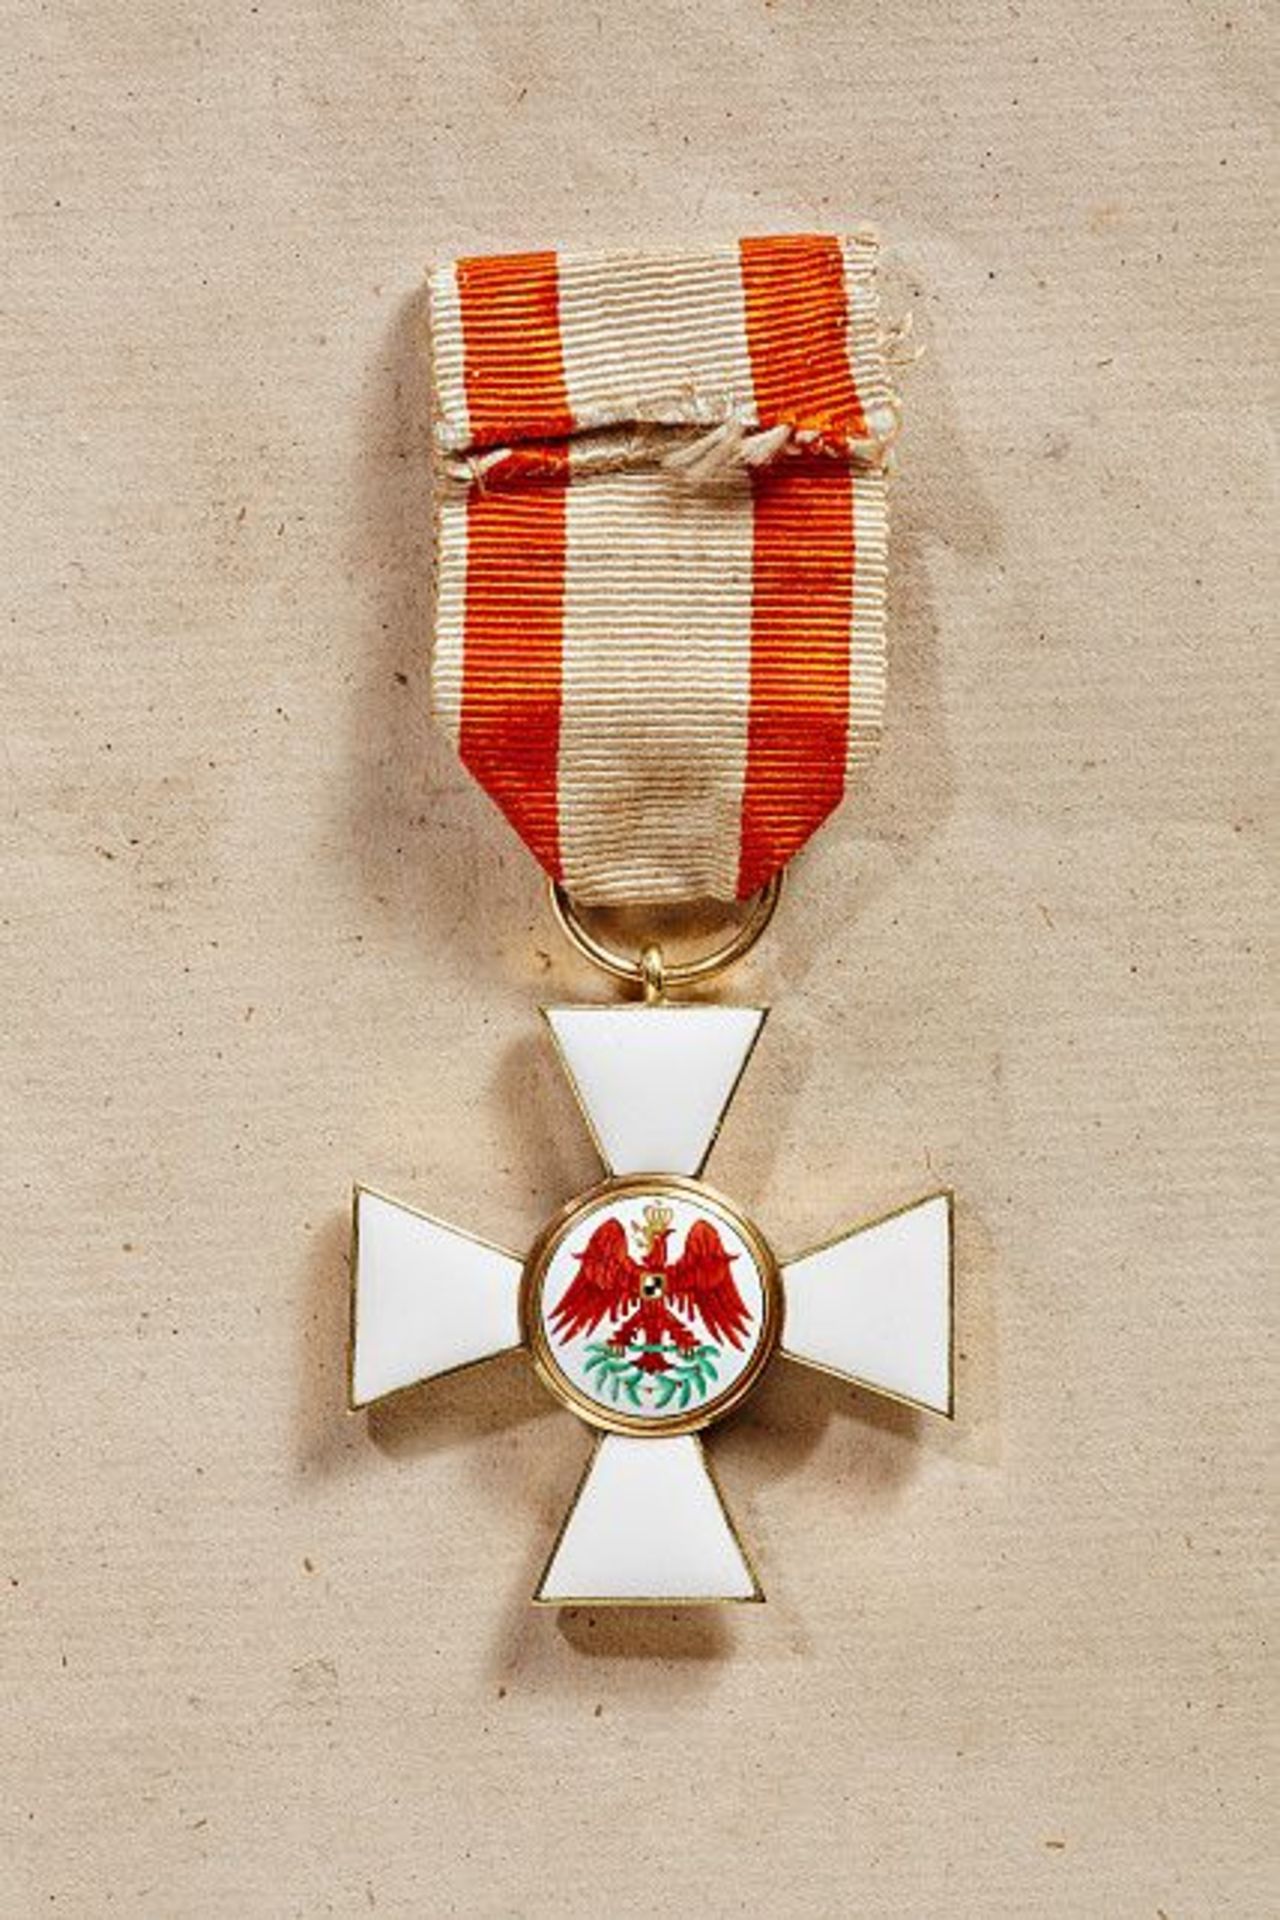 KÖNIGREICH PREUSSEN - ROTER ADLER ORDEN : Kreuz 3. Klasse.  Gold und Emaille, ohne Band. Auf dem